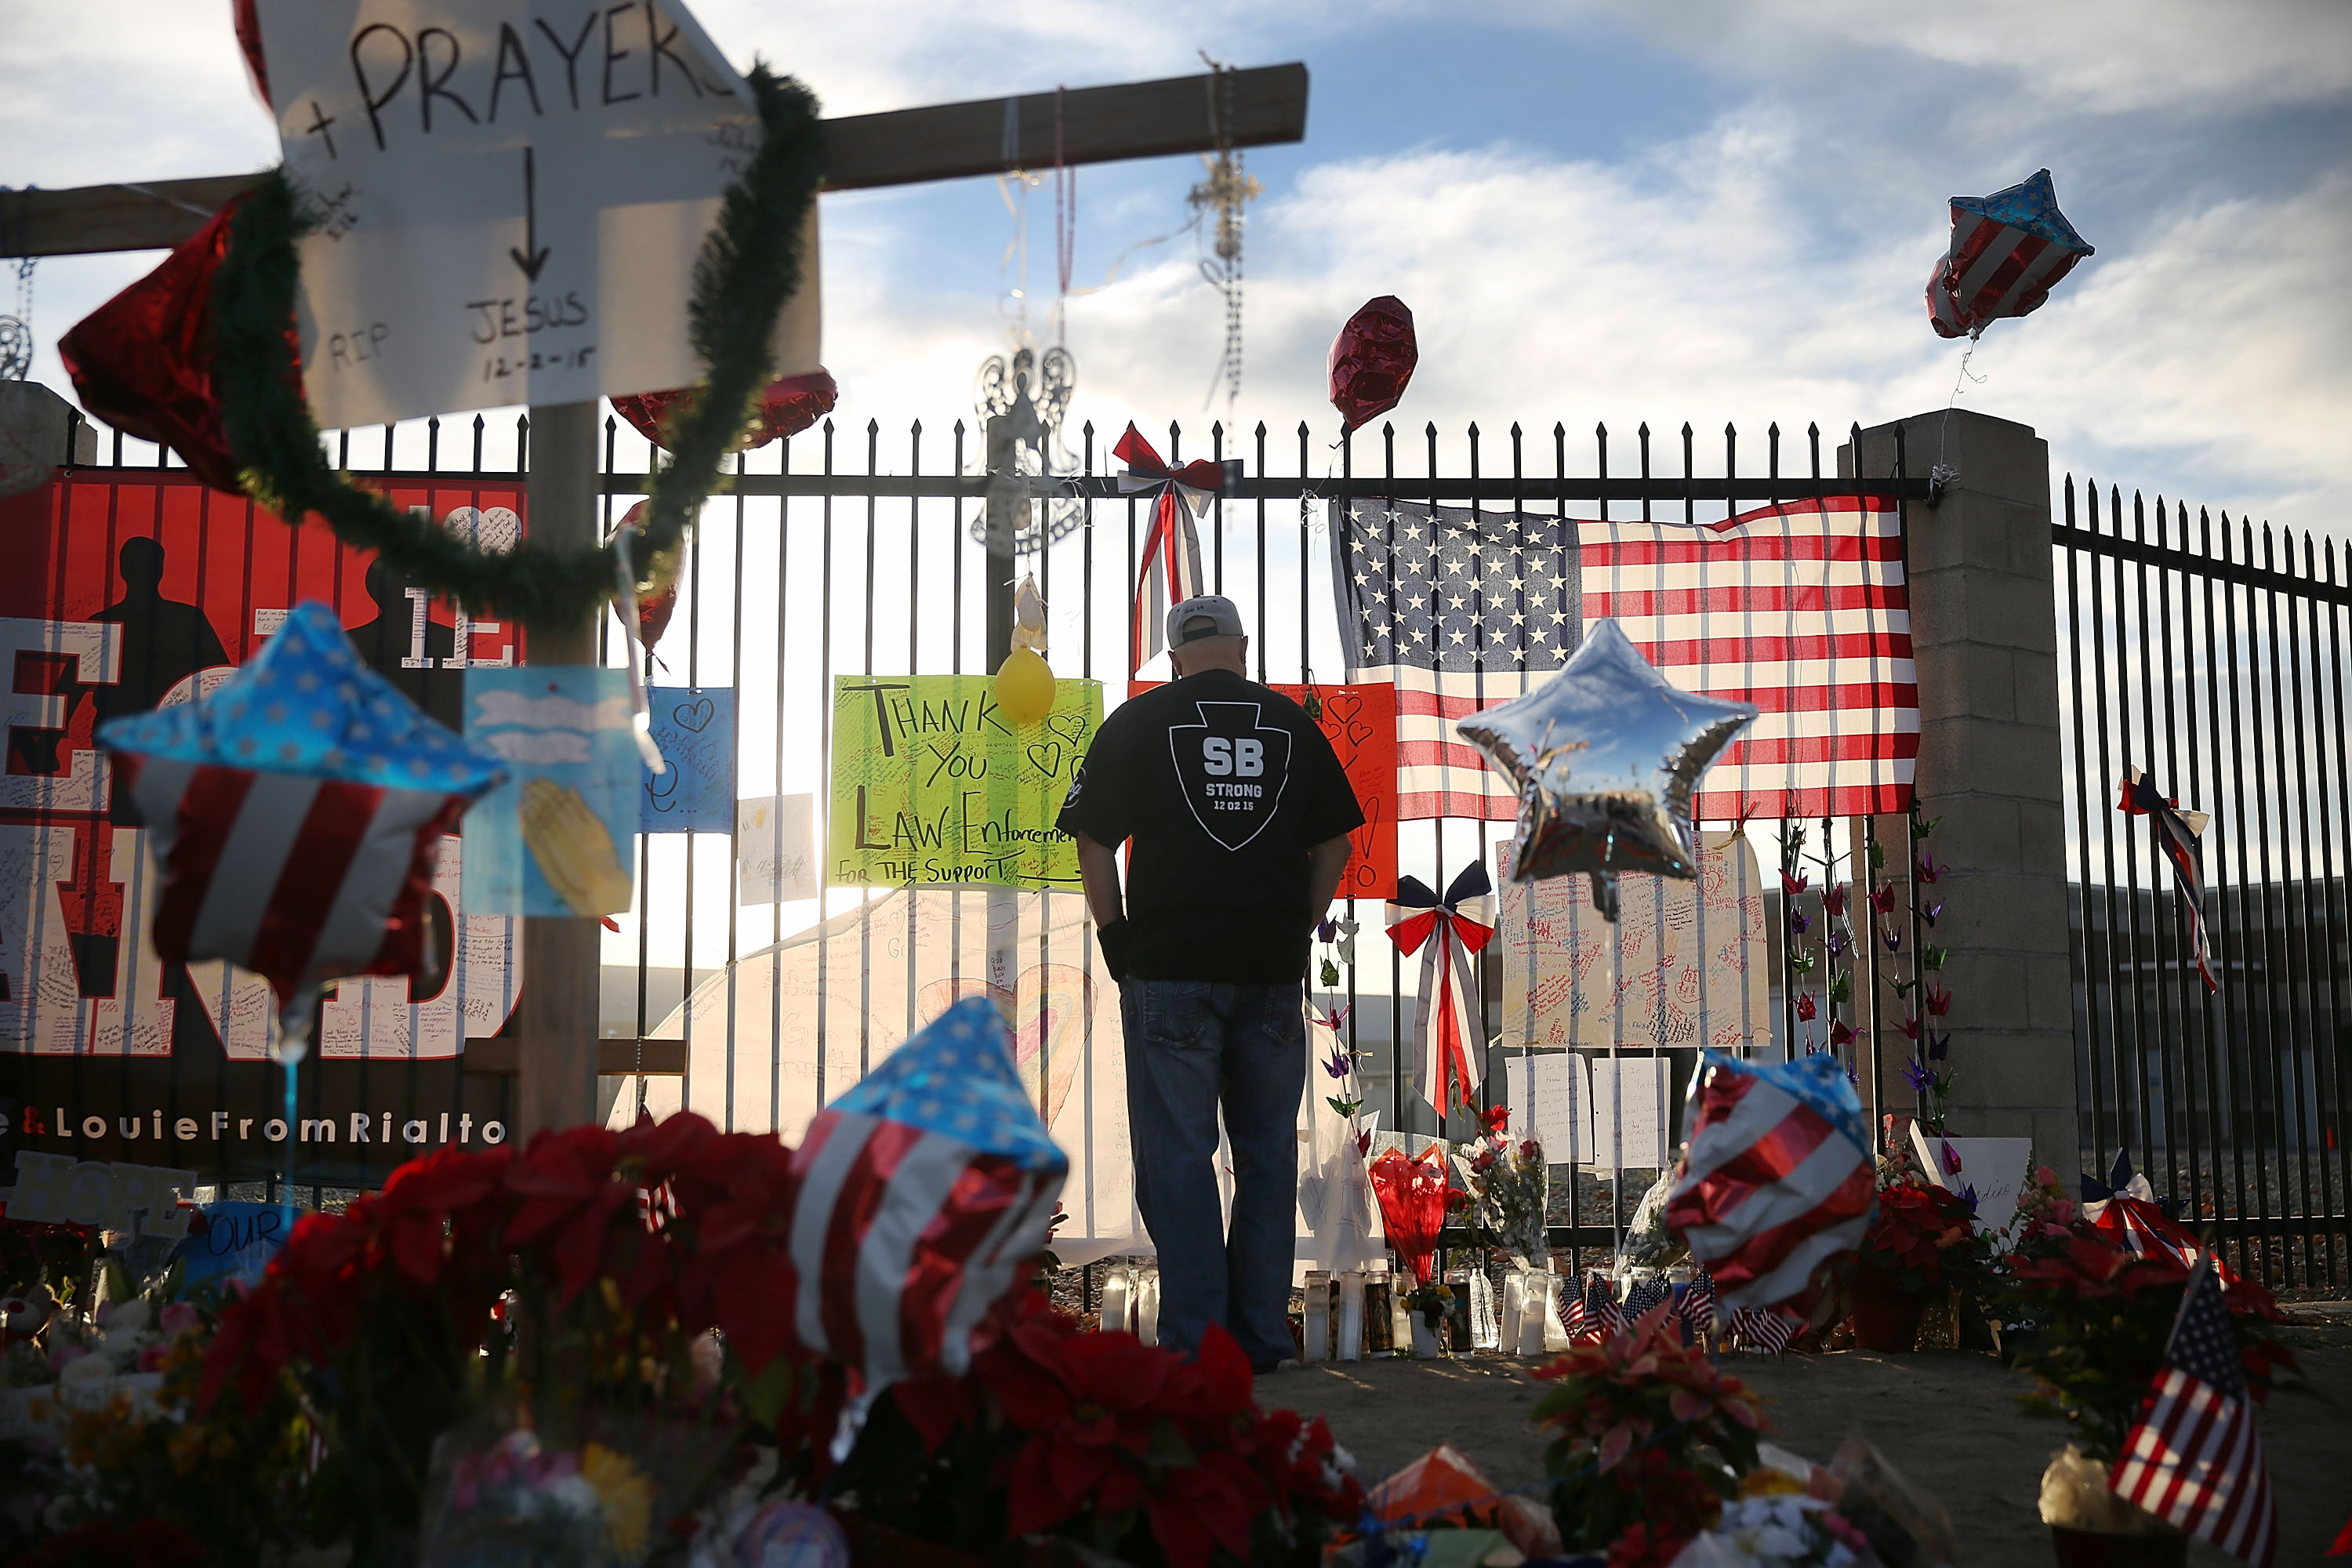 David Santos visits a memorial on Dec. 7, 2015 in San Bernardino, Calif. (Joe Raedle—Getty Images)